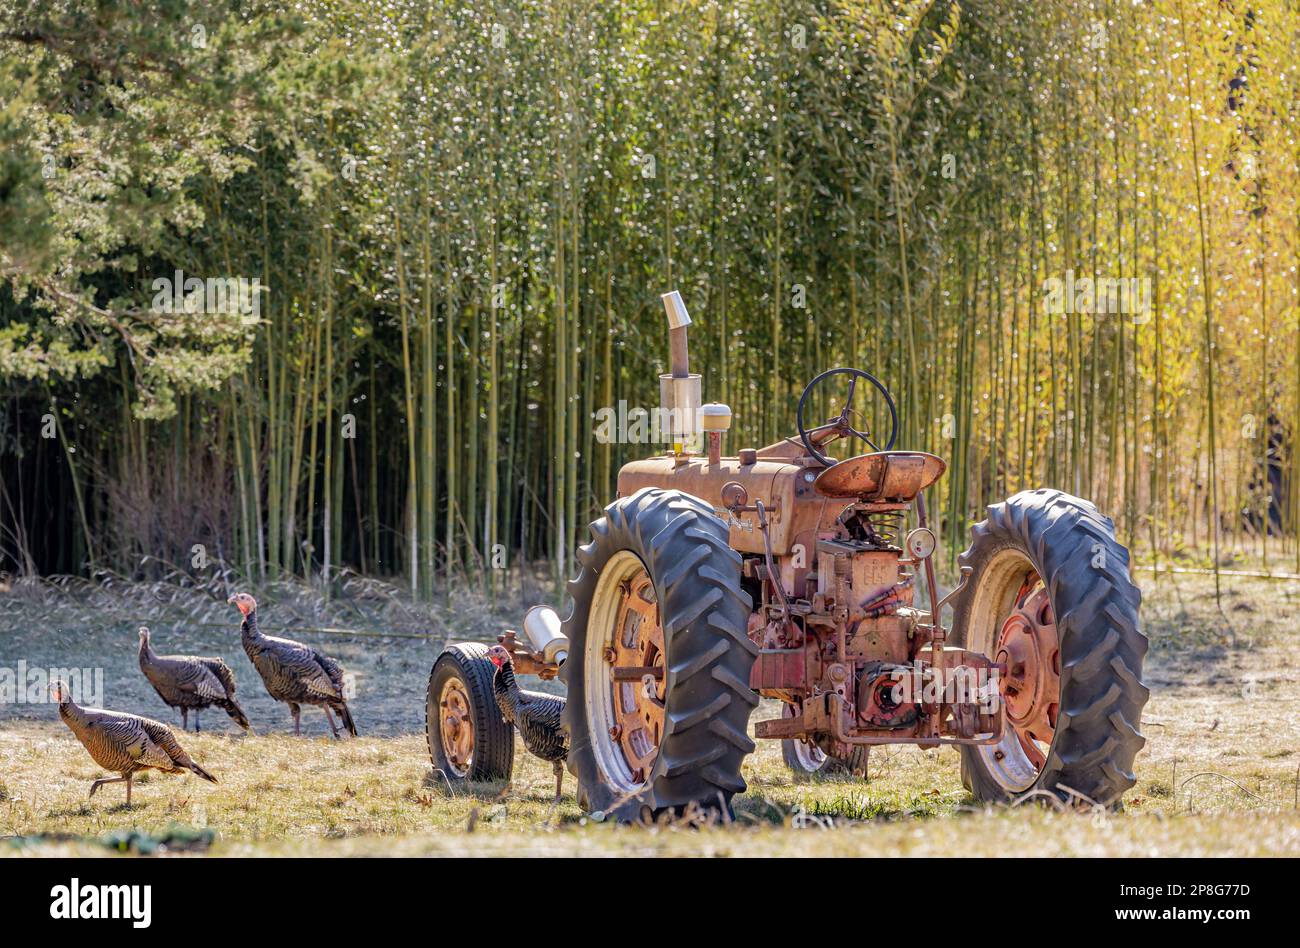 Vieux tracteur Farmall assis dans un champ avec des dindes Banque D'Images